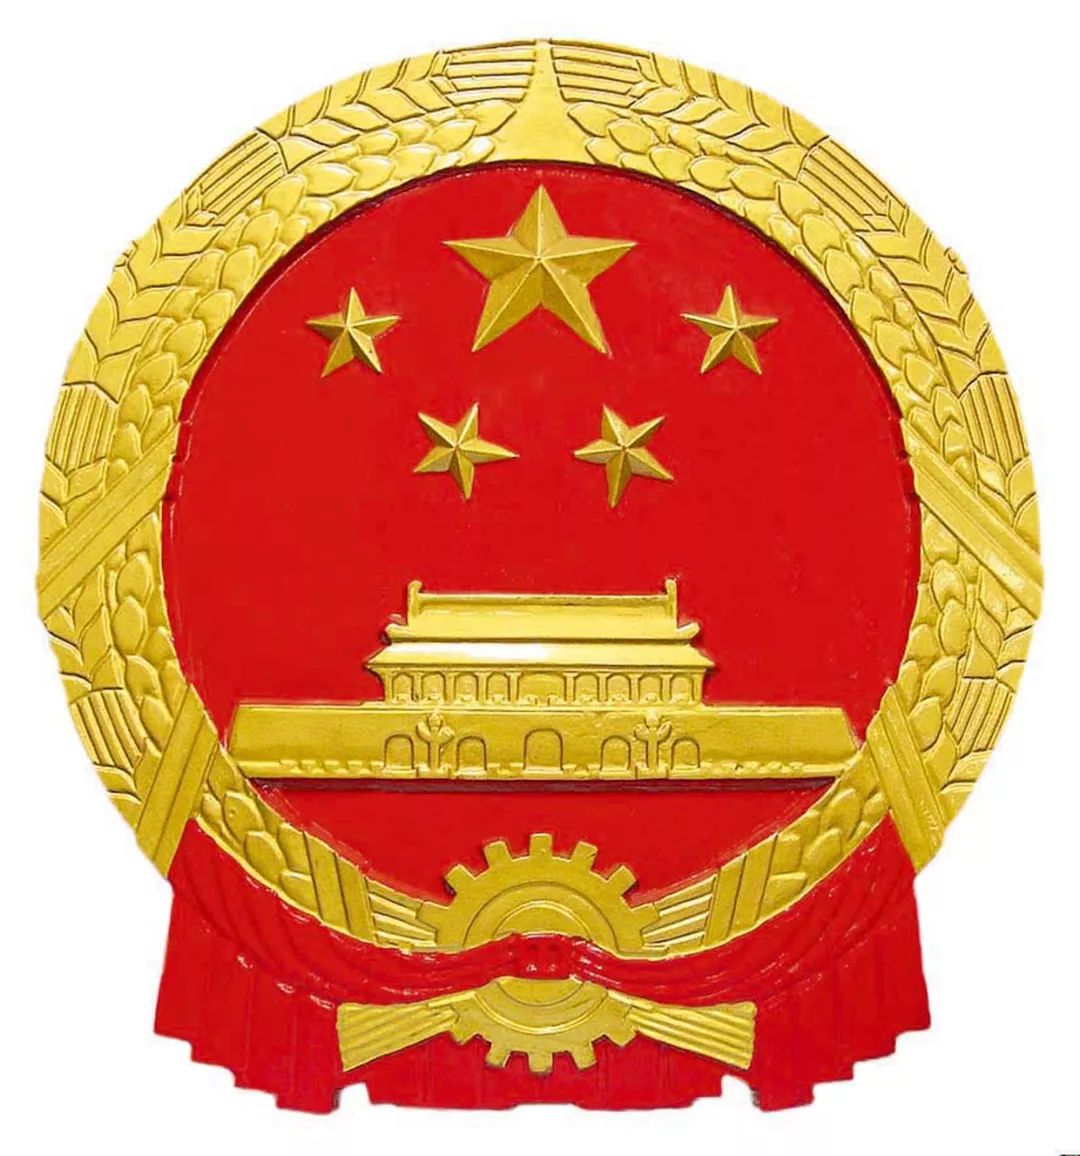 主要展出包括中国人民政治协商会议会徽,中华人民共和国国徽,共青团